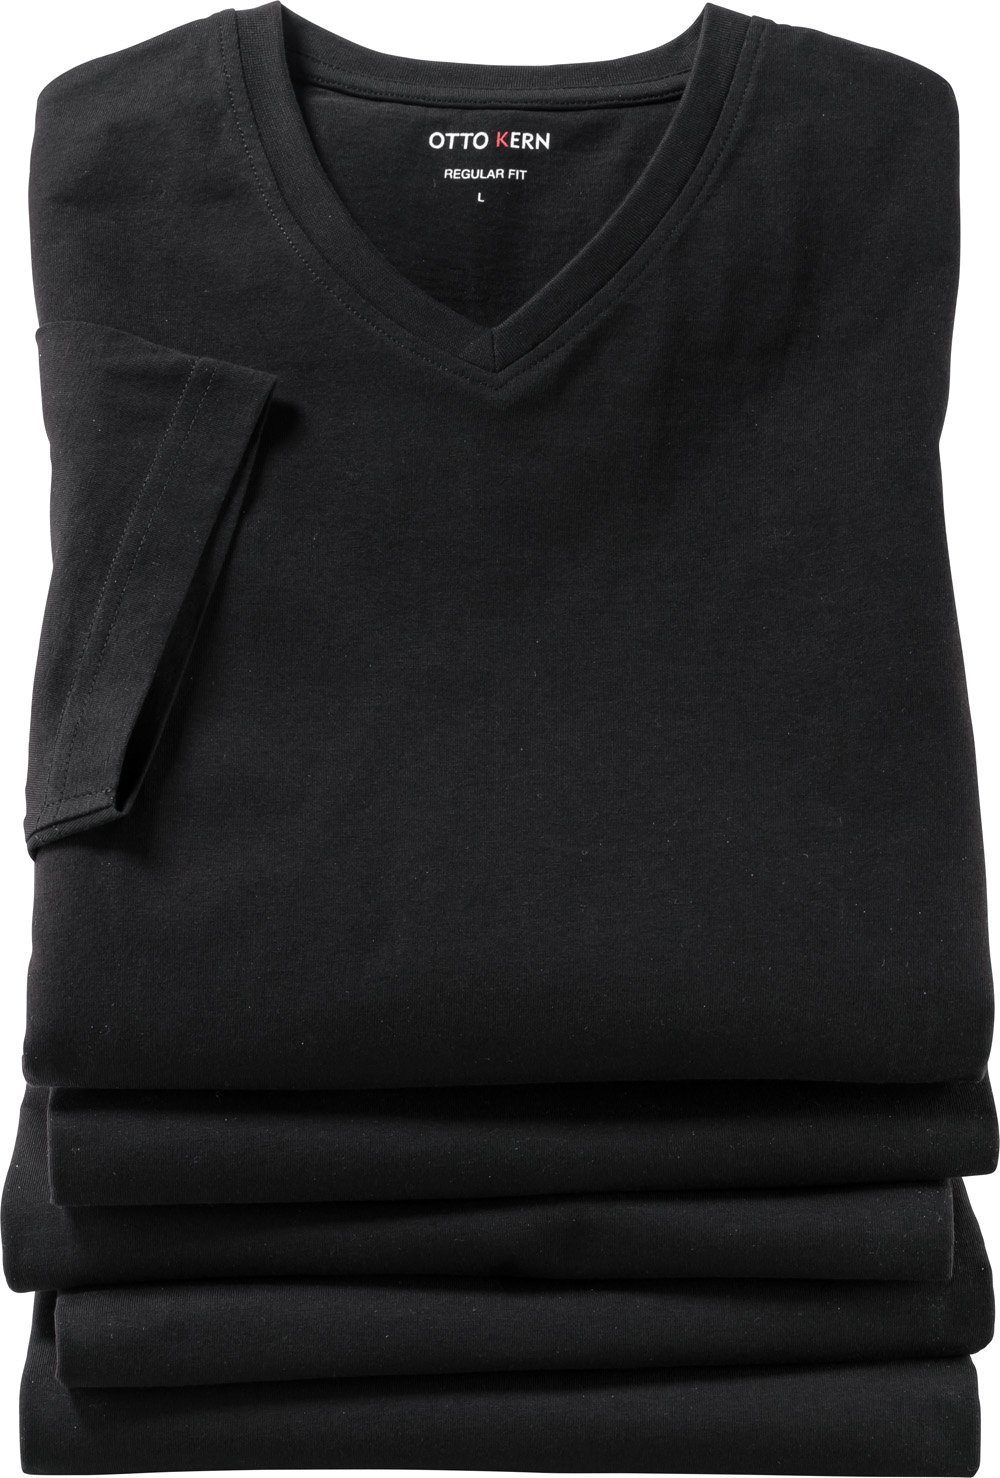 Otto Kern Kern T-Shirt (5er-Pack) reiner aus schwarz Kurzarmshirt Baumwolle hochwertiger